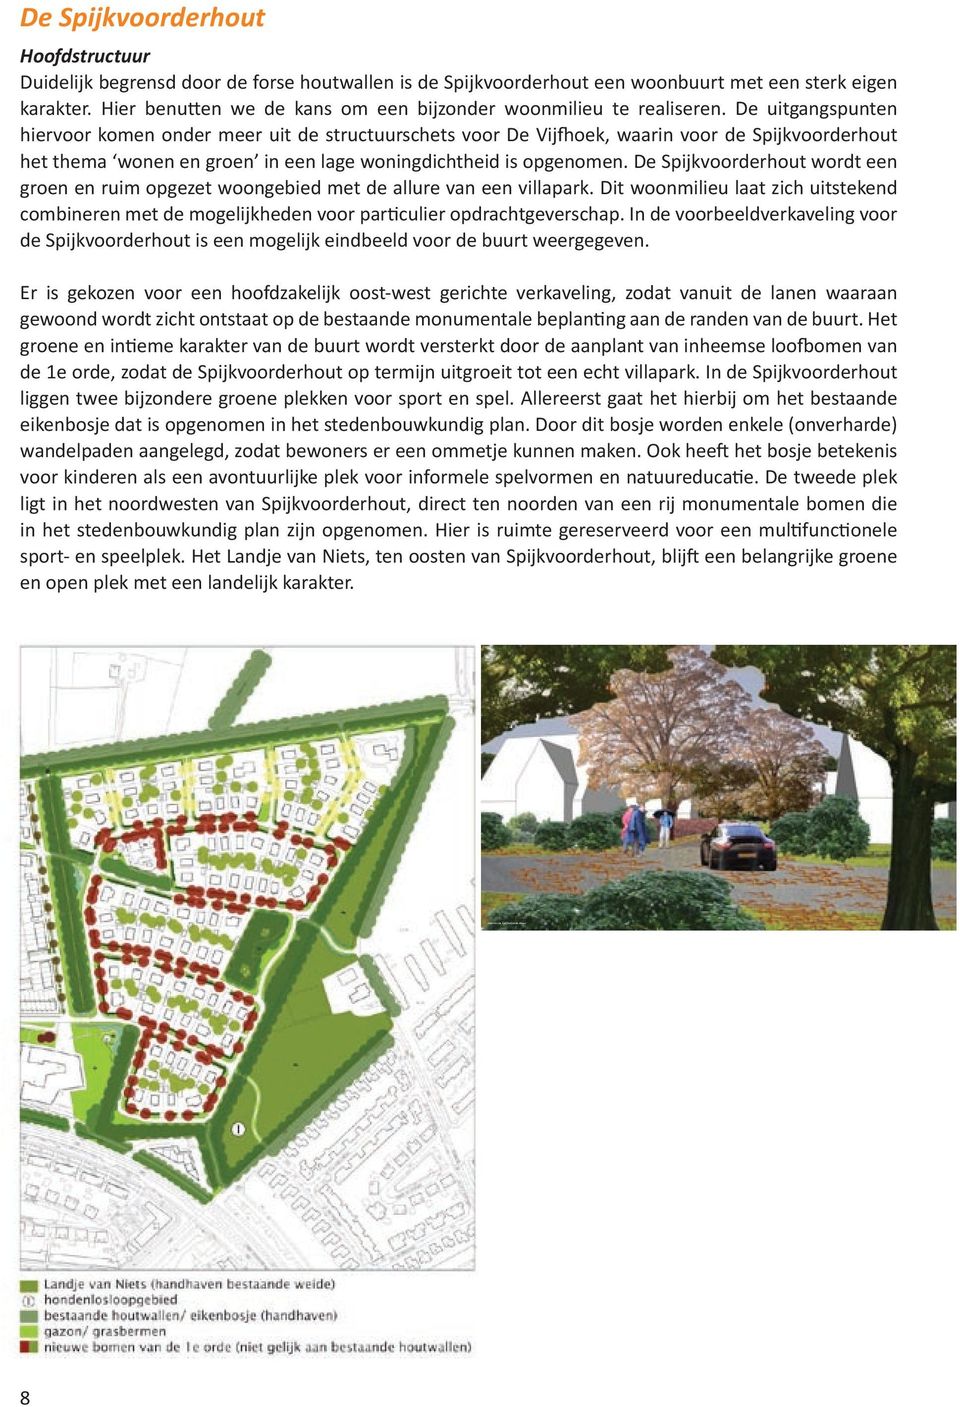 De uitgangspunten hiervoor komen onder meer uit de structuurschets voor De Vijfhoek, waarin voor de Spijkvoorderhout het thema wonen en groen in een lage woningdichtheid is opgenomen.